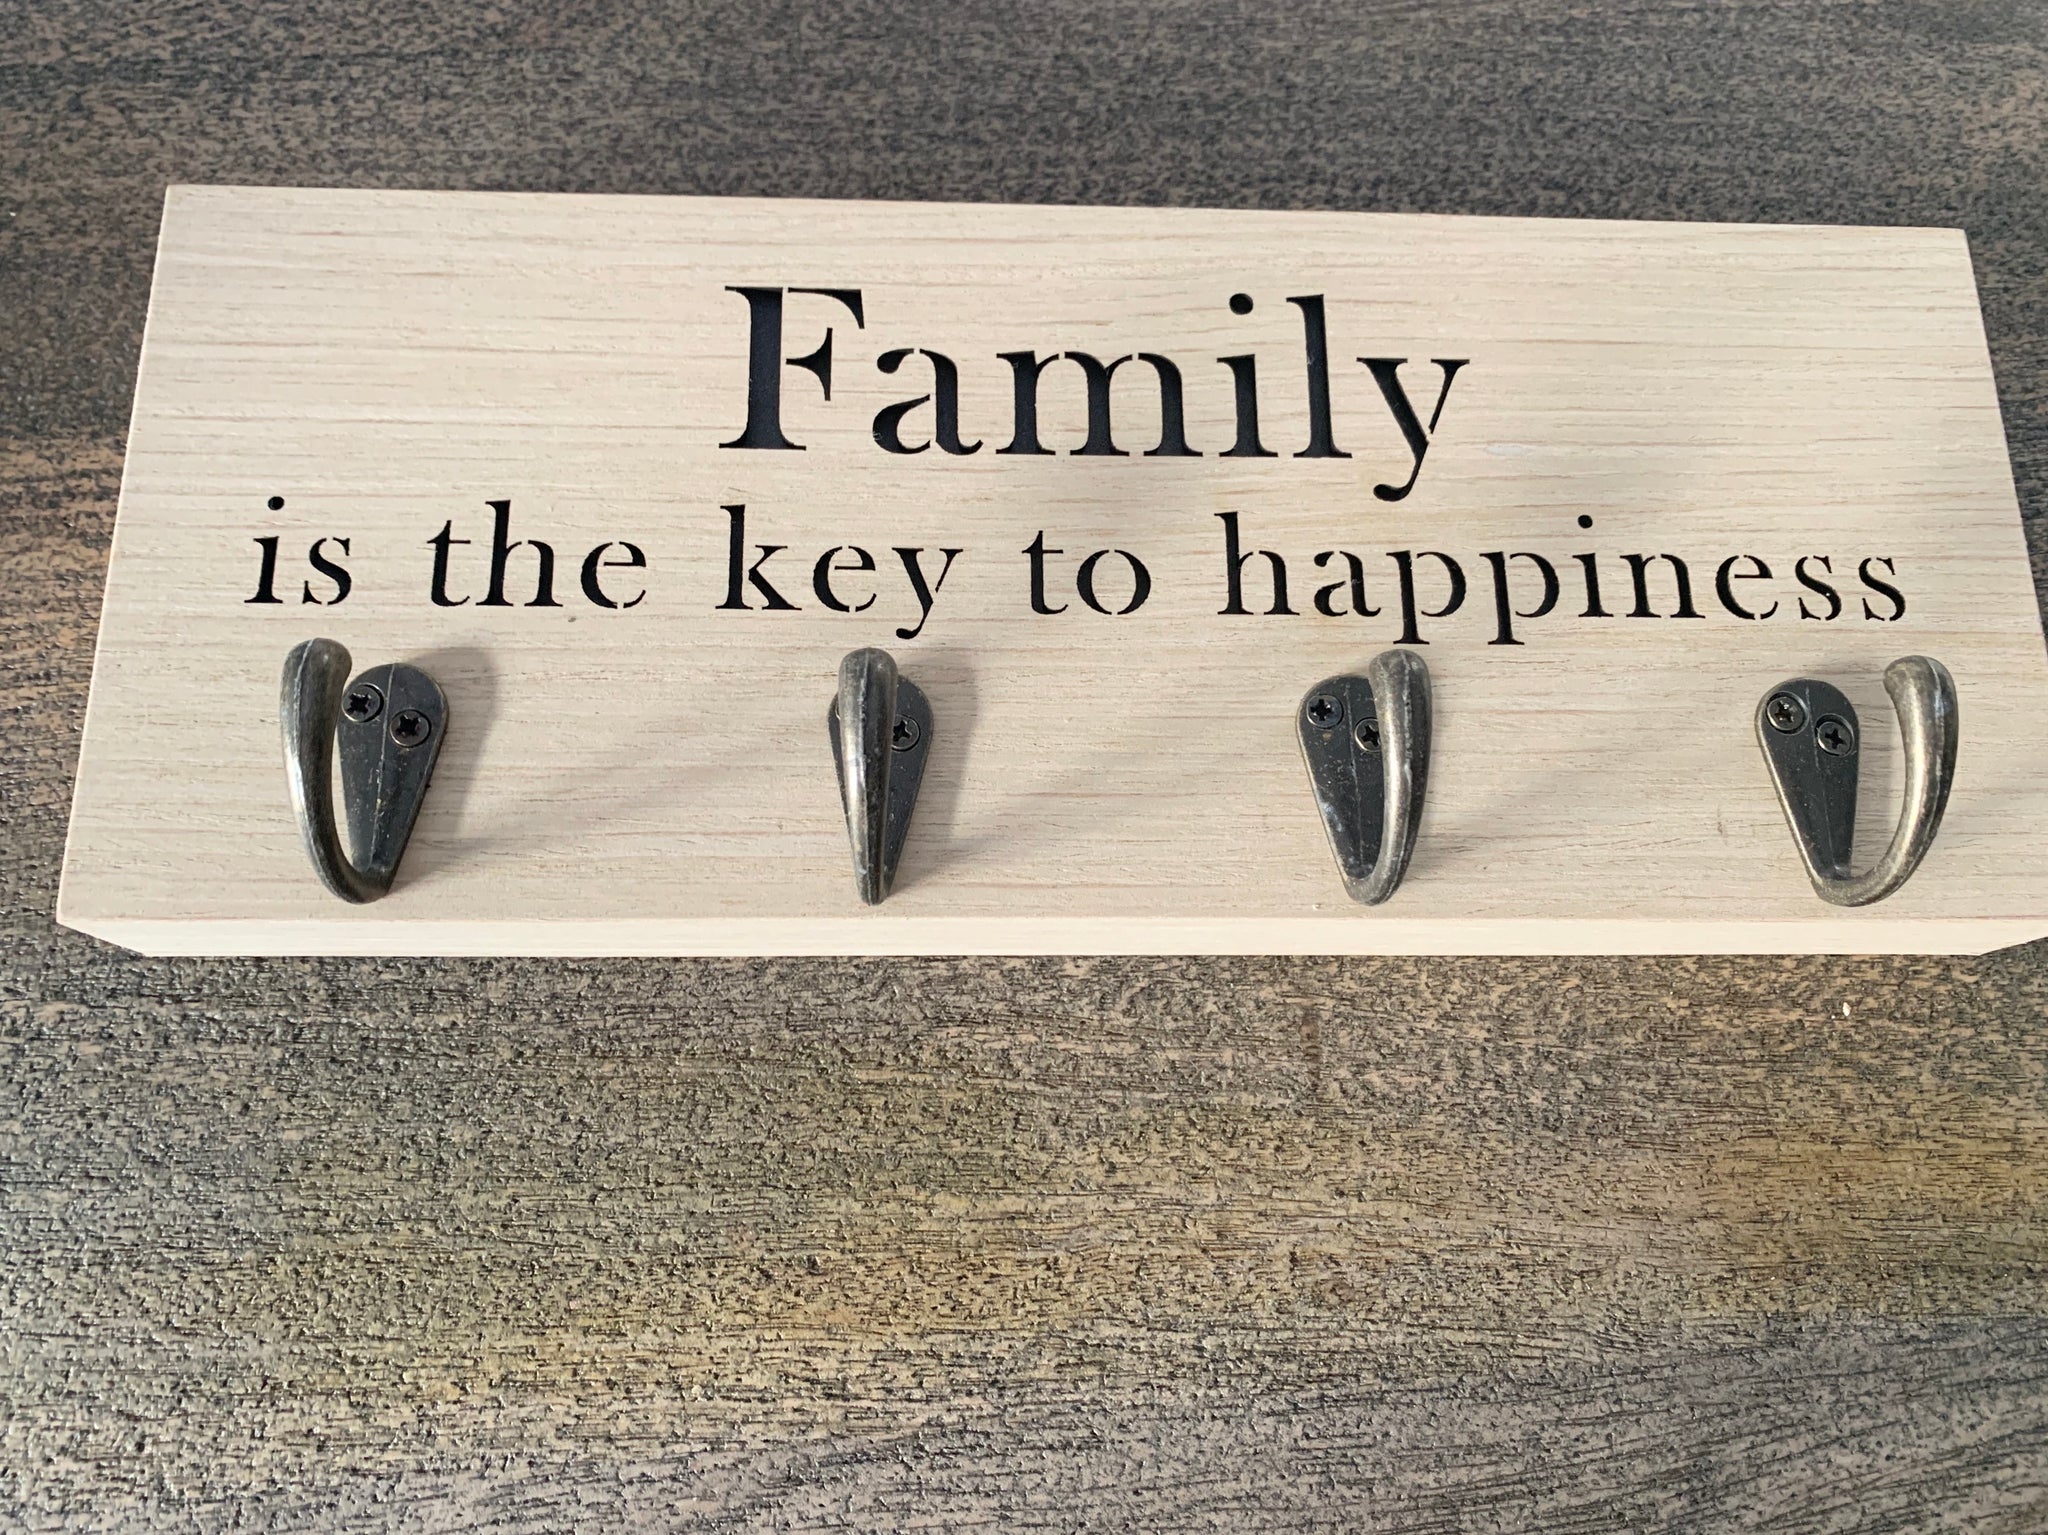 Family key hanger